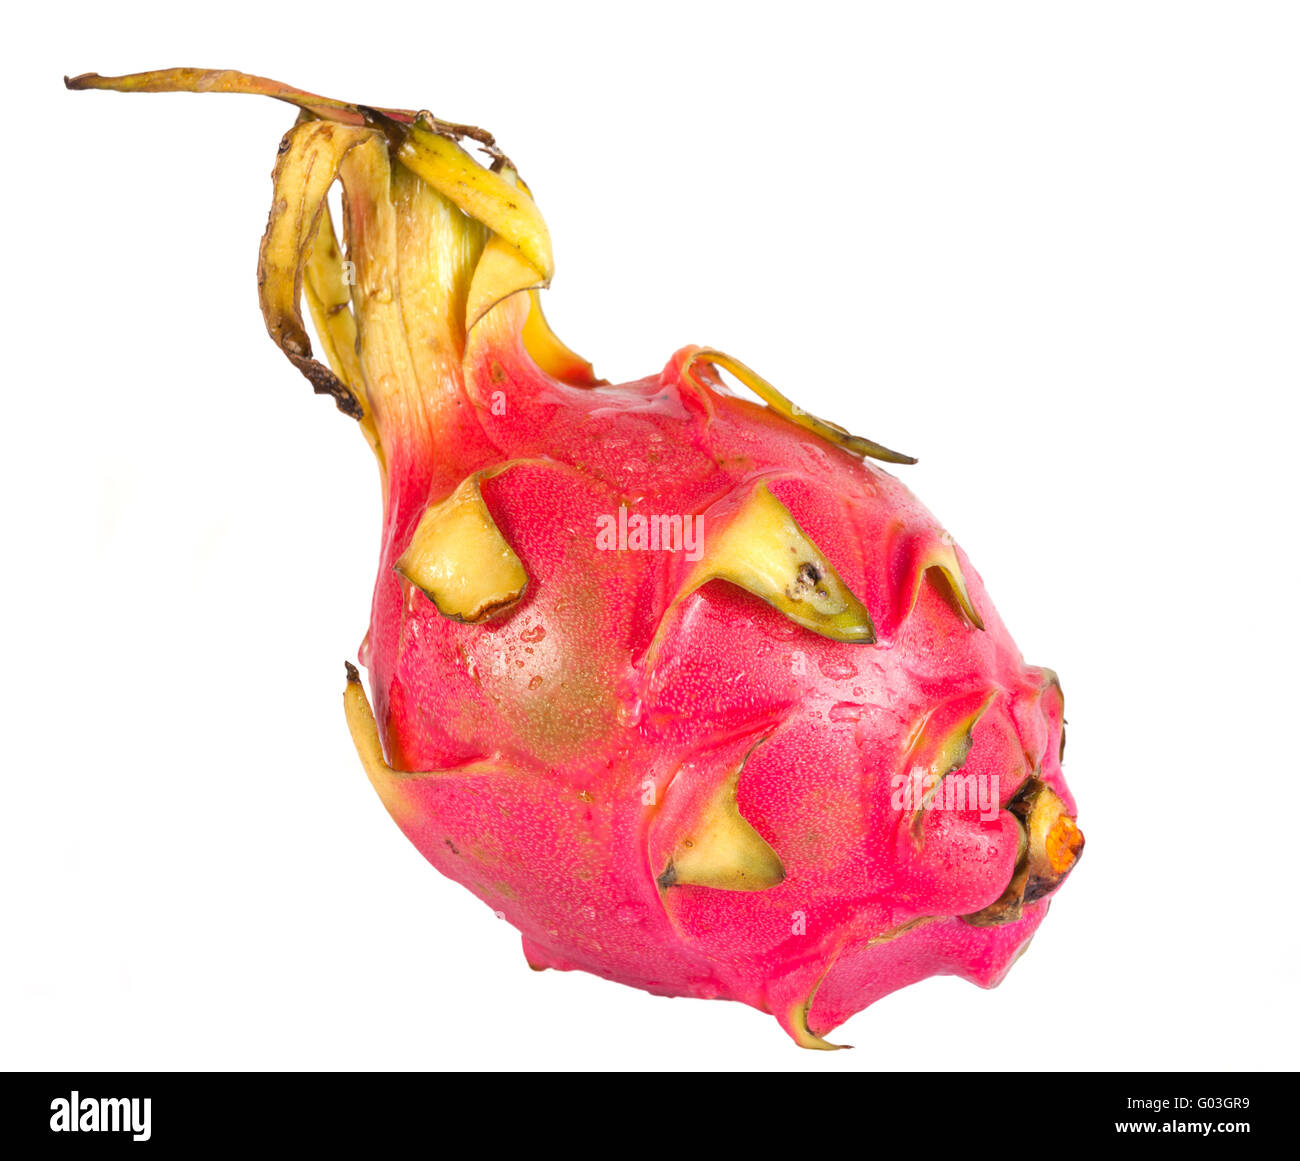 Pitaya, dragon fruit isolated on white background Stock Photo